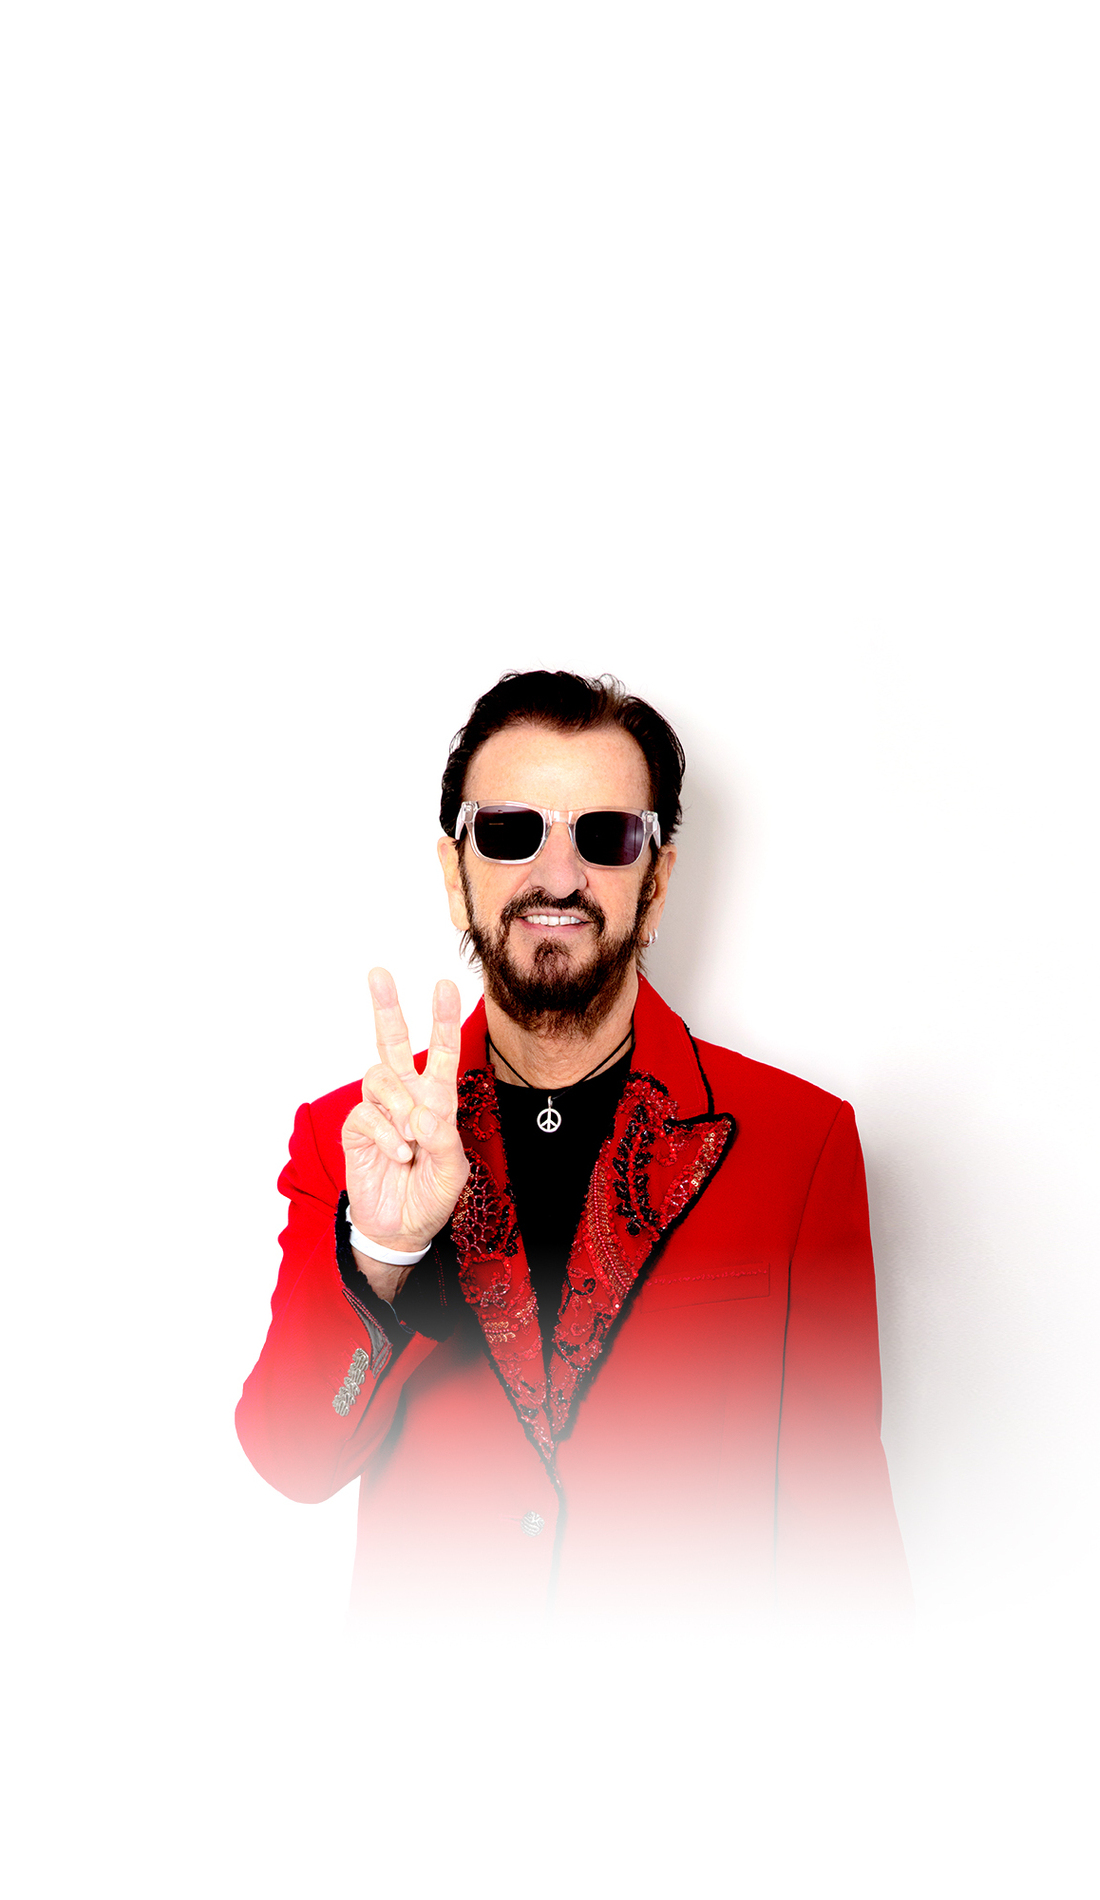 A Ringo Starr live event